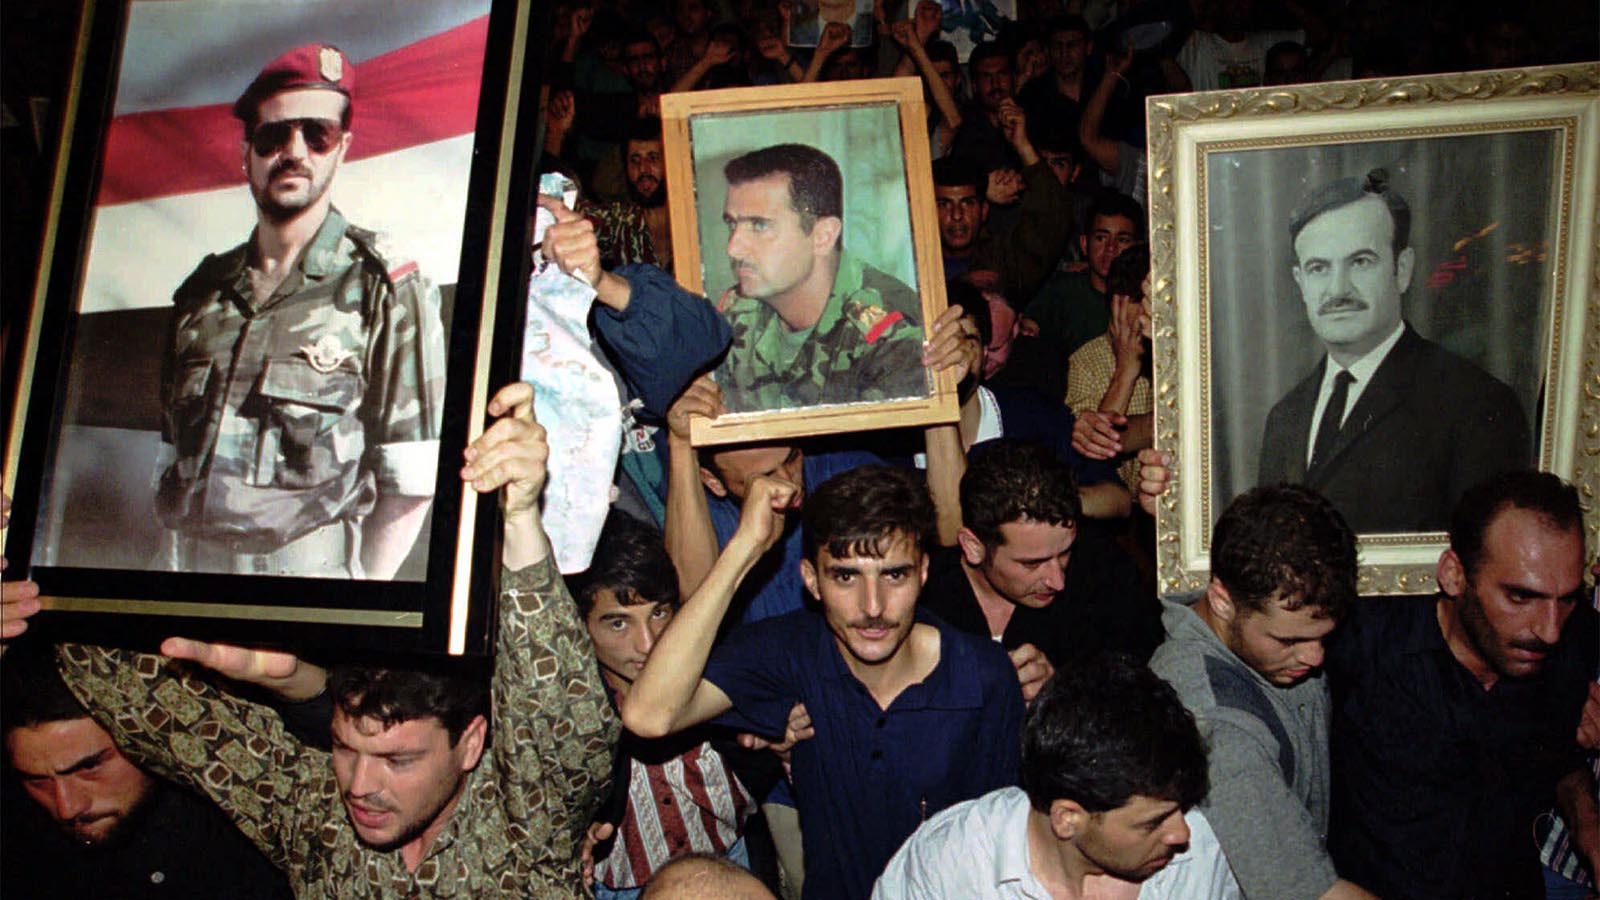 אזרחים סורים מתאבלים על מותו של הנשיא חאפז אל-אסד, 2000. (AP Photo/Hussein Malla, File)